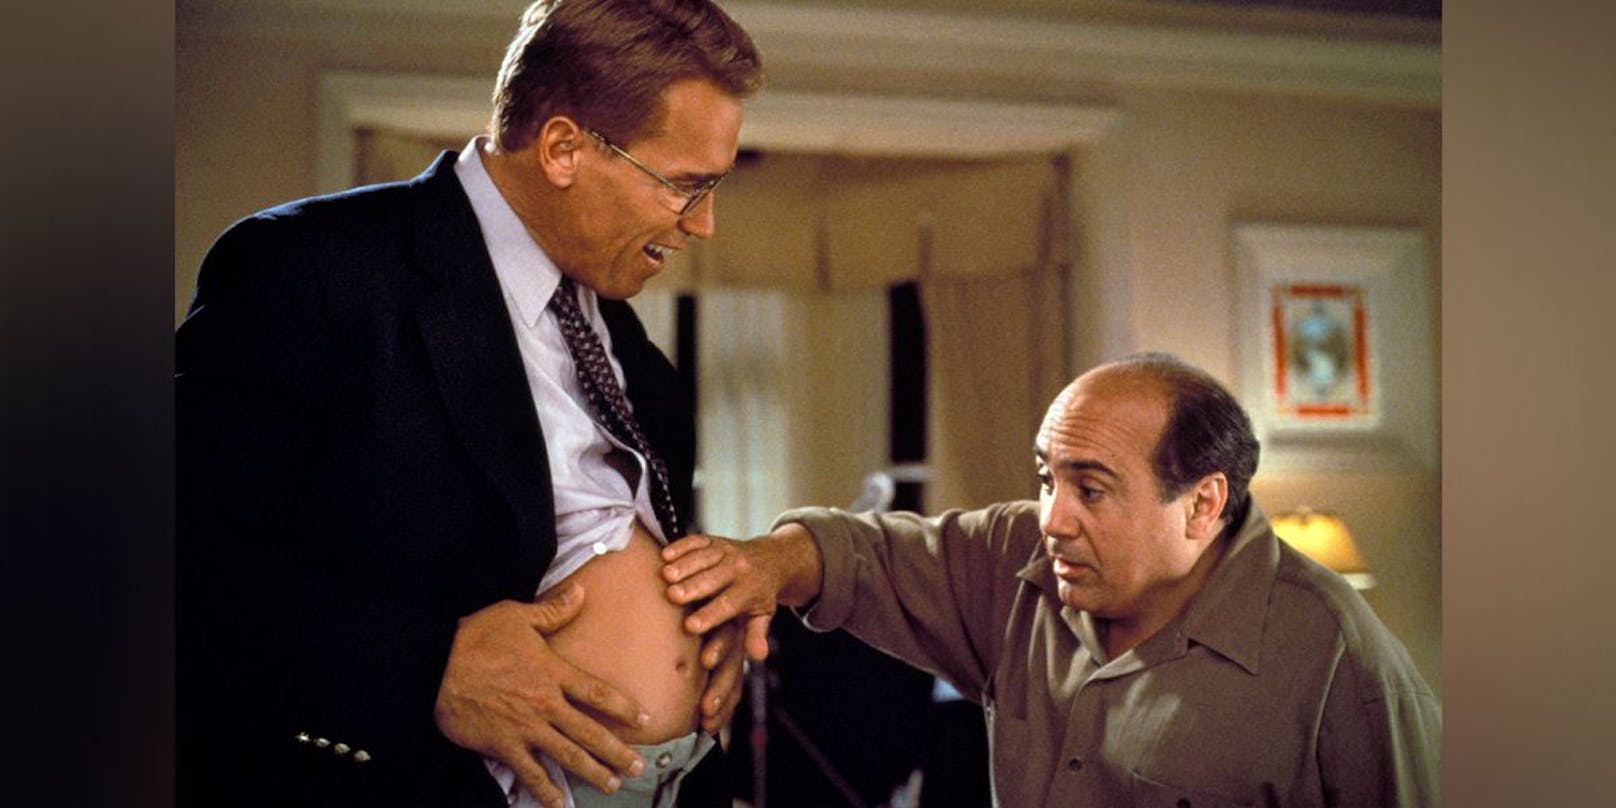 Unvergessen: Arnold Schwarzenegger als schwangerer Mann mit Danny DeVito in "Junior" (1994).